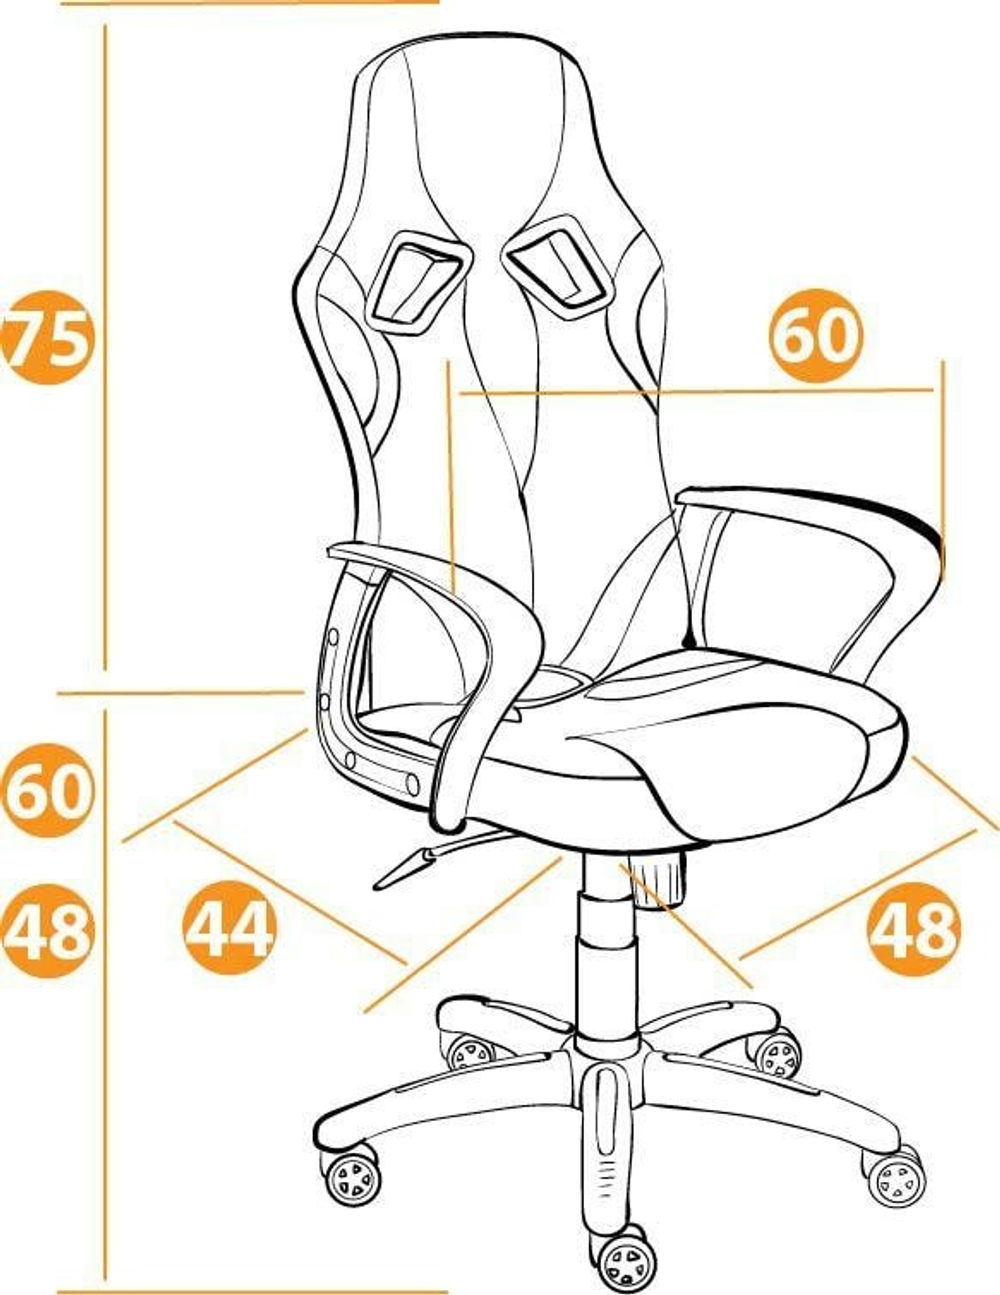 Runner Кресло офисное (серый 2Tone/черный кожзам/ткань)